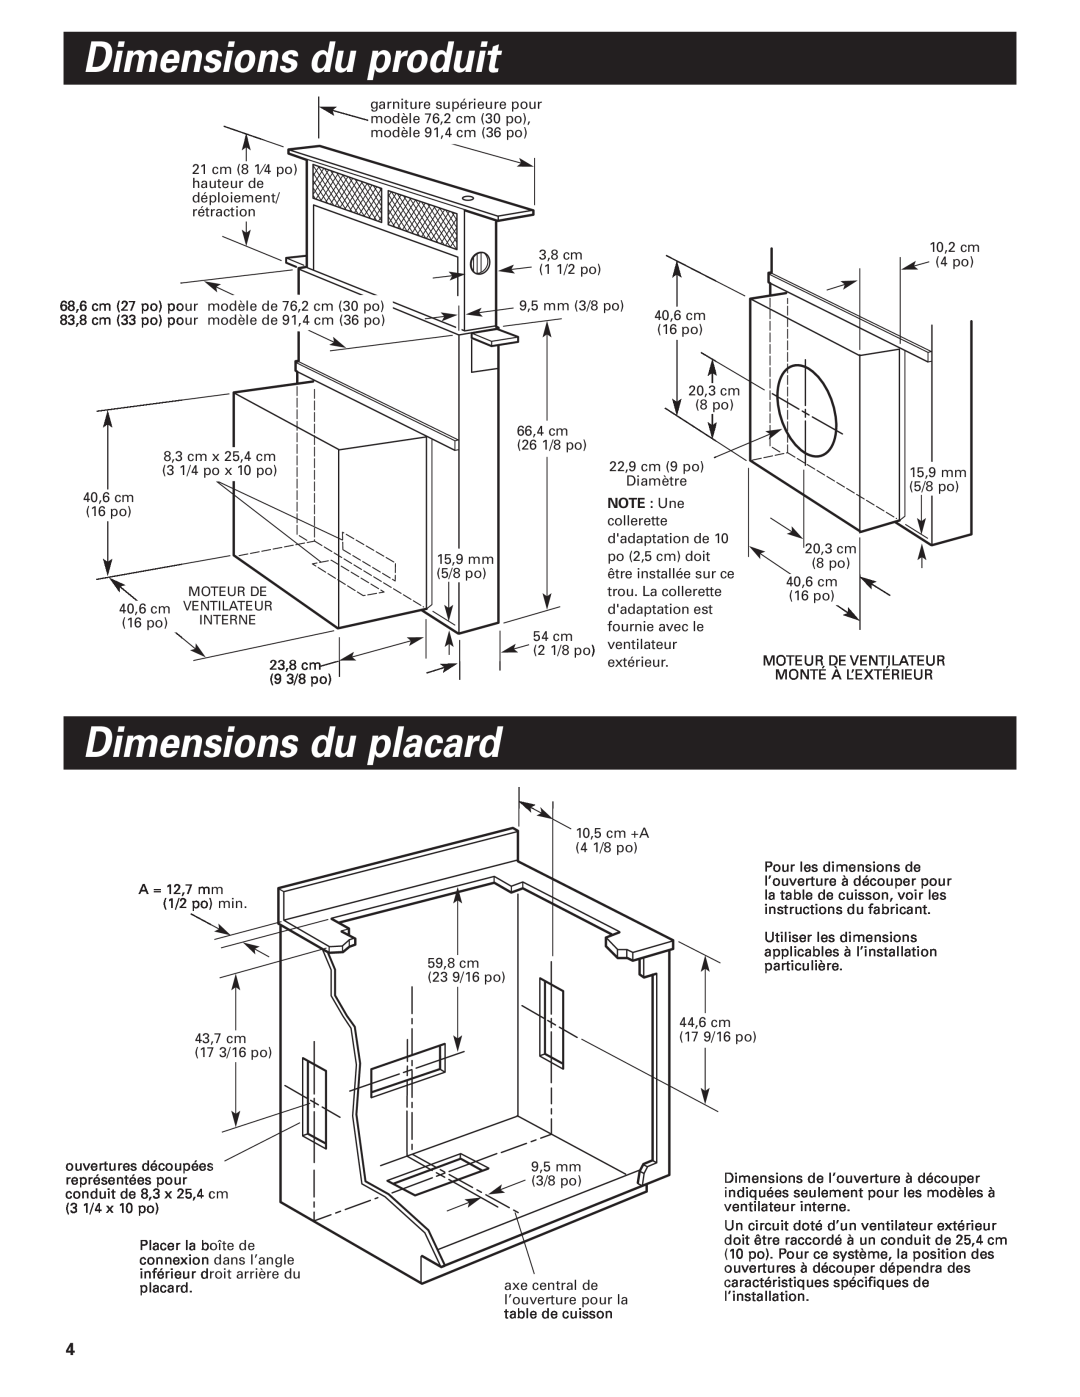 Whirlpool GZ7930XGS0 installation instructions Dimensions du produit, Dimensions du placard, NOTE Une 